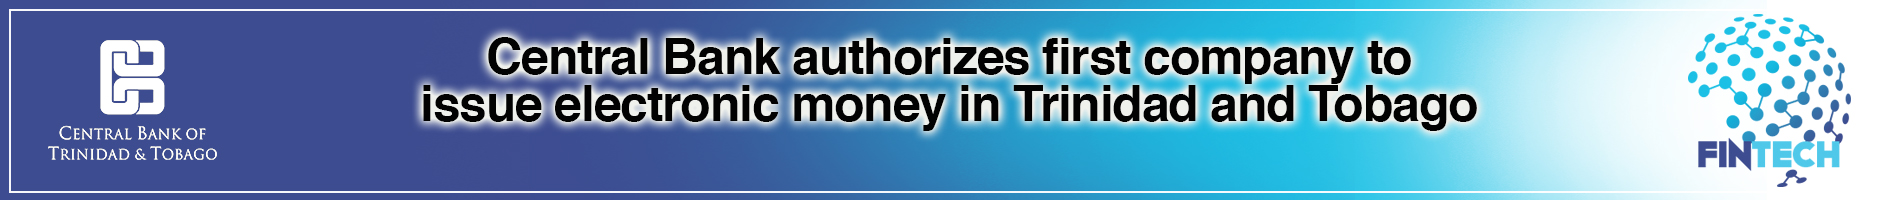 Homepage | Central Bank of Trinidad and Tobago